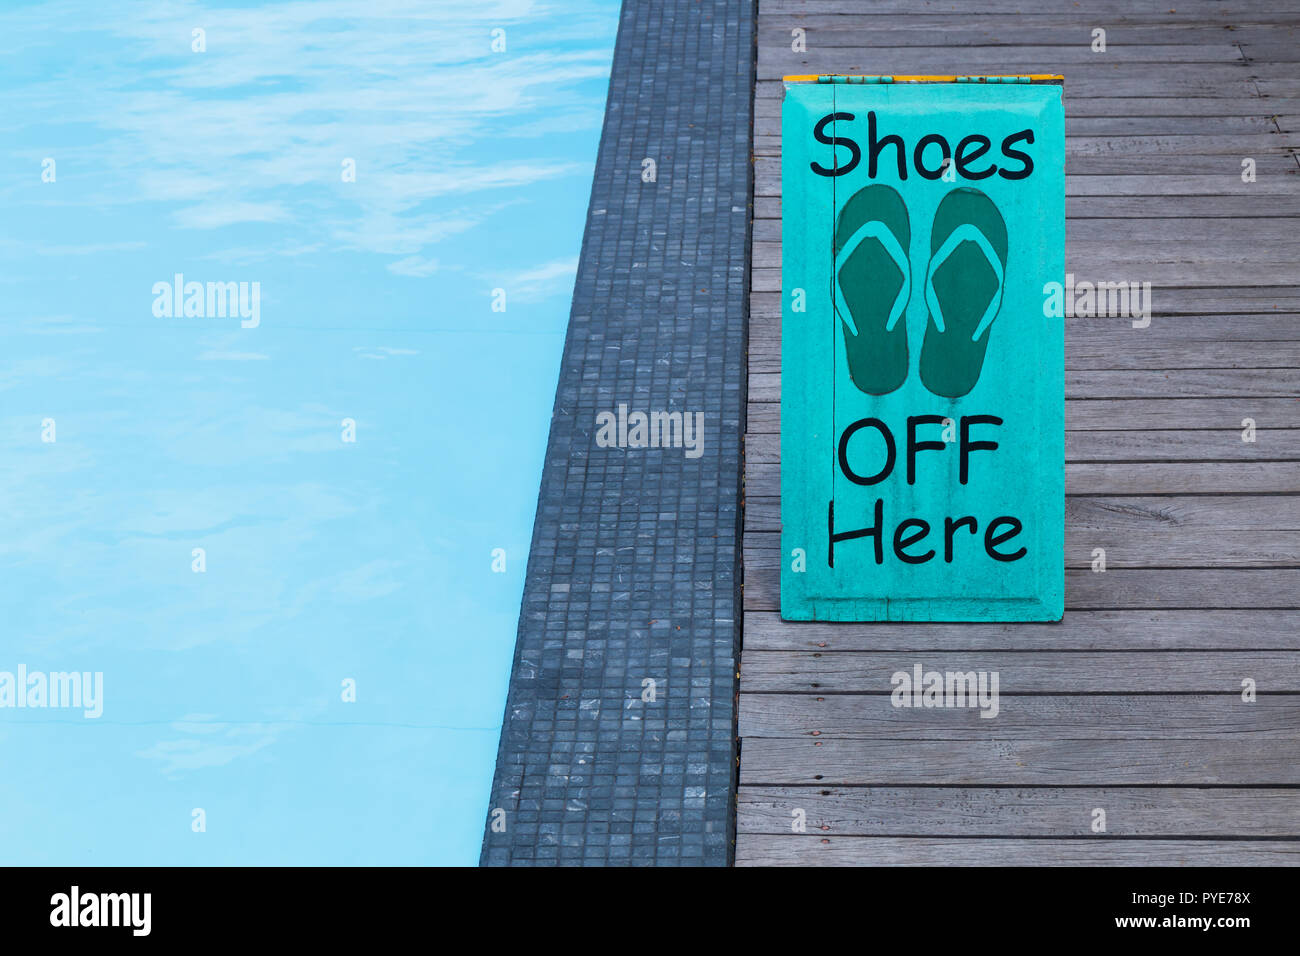 Keine Schuhe anmelden, indem das Schwimmbad auf dem Holzboden in grüner Farbe Stockfoto